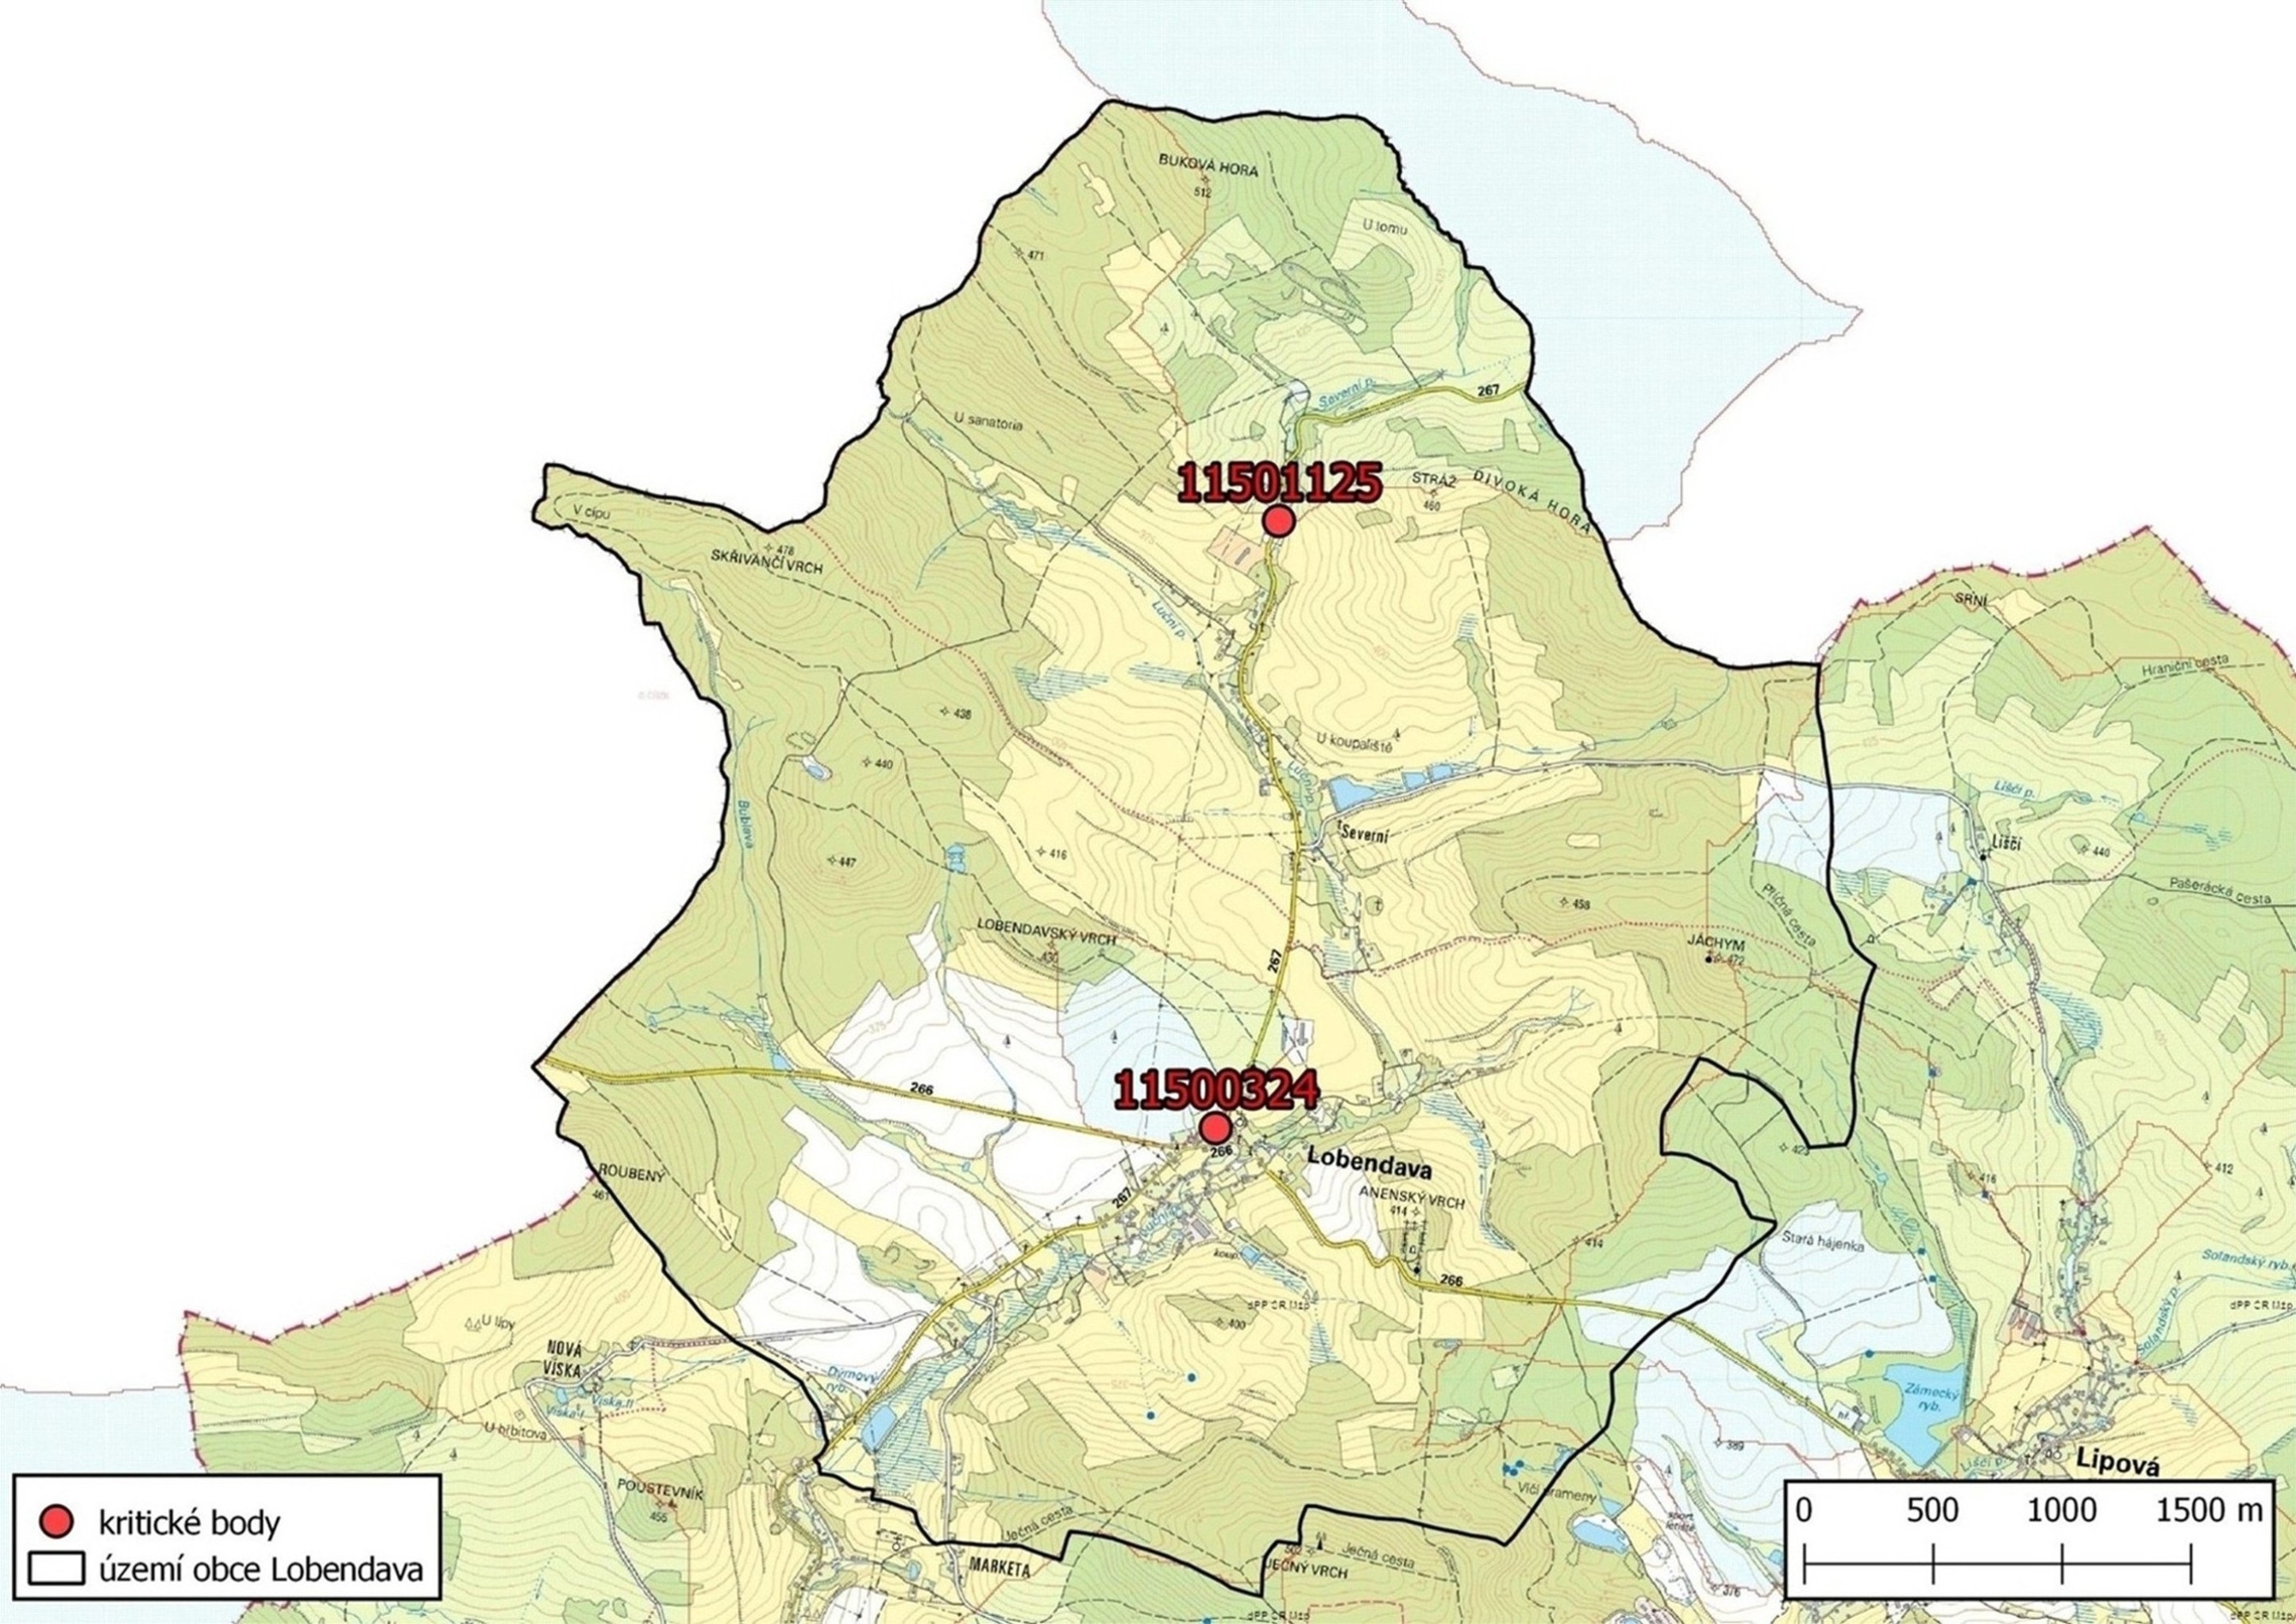 Zhodnocení vzniku přívalových povodní na území obce Lobendava metodou kritických bodů